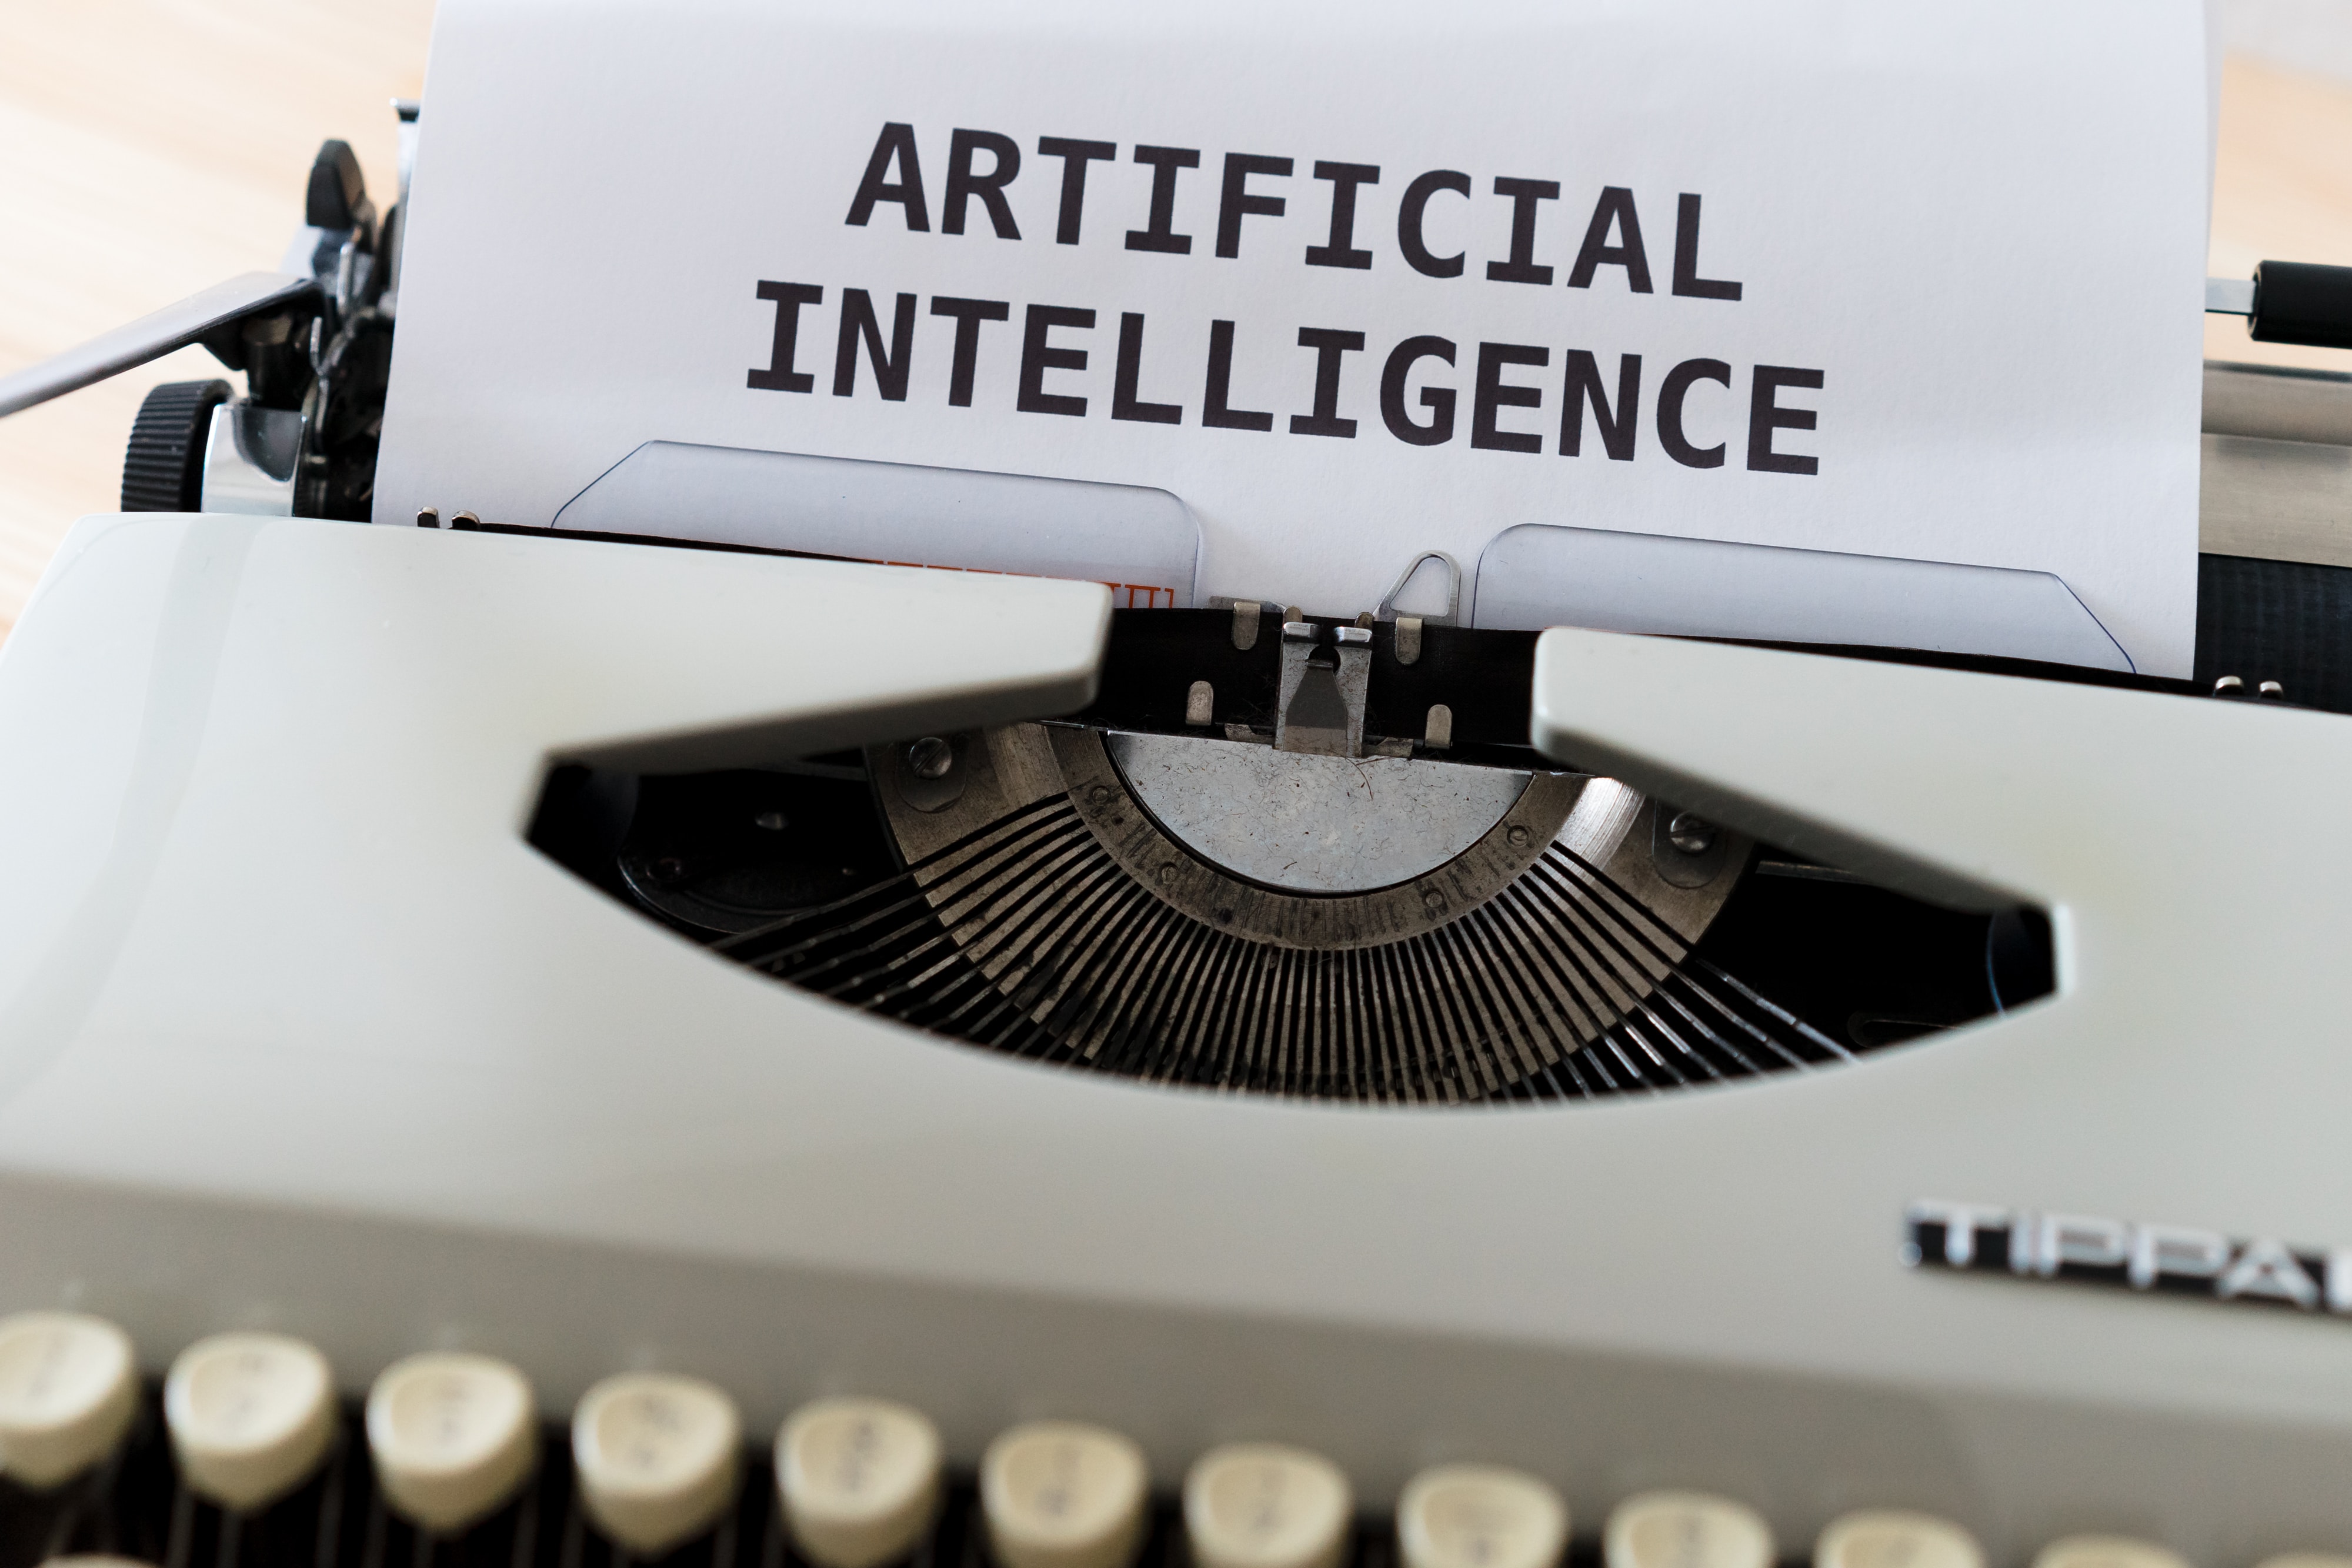 Las noticias falsas podrían aumentar con el uso de la inteligencia artificial. (Unsplash)